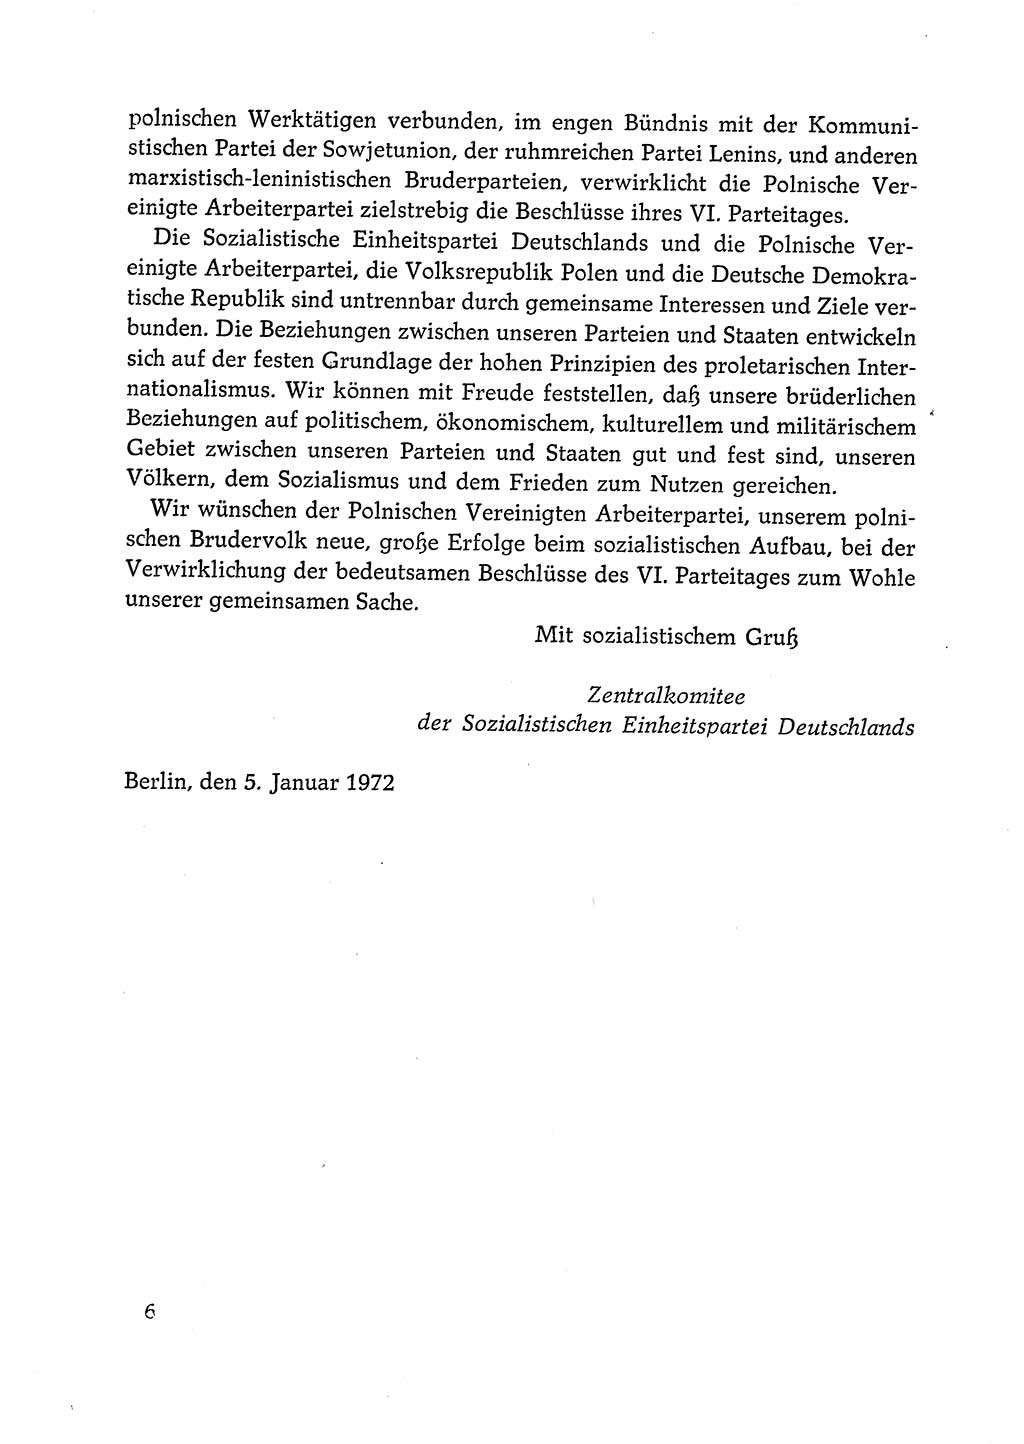 Dokumente der Sozialistischen Einheitspartei Deutschlands (SED) [Deutsche Demokratische Republik (DDR)] 1972-1973, Seite 6 (Dok. SED DDR 1972-1973, S. 6)